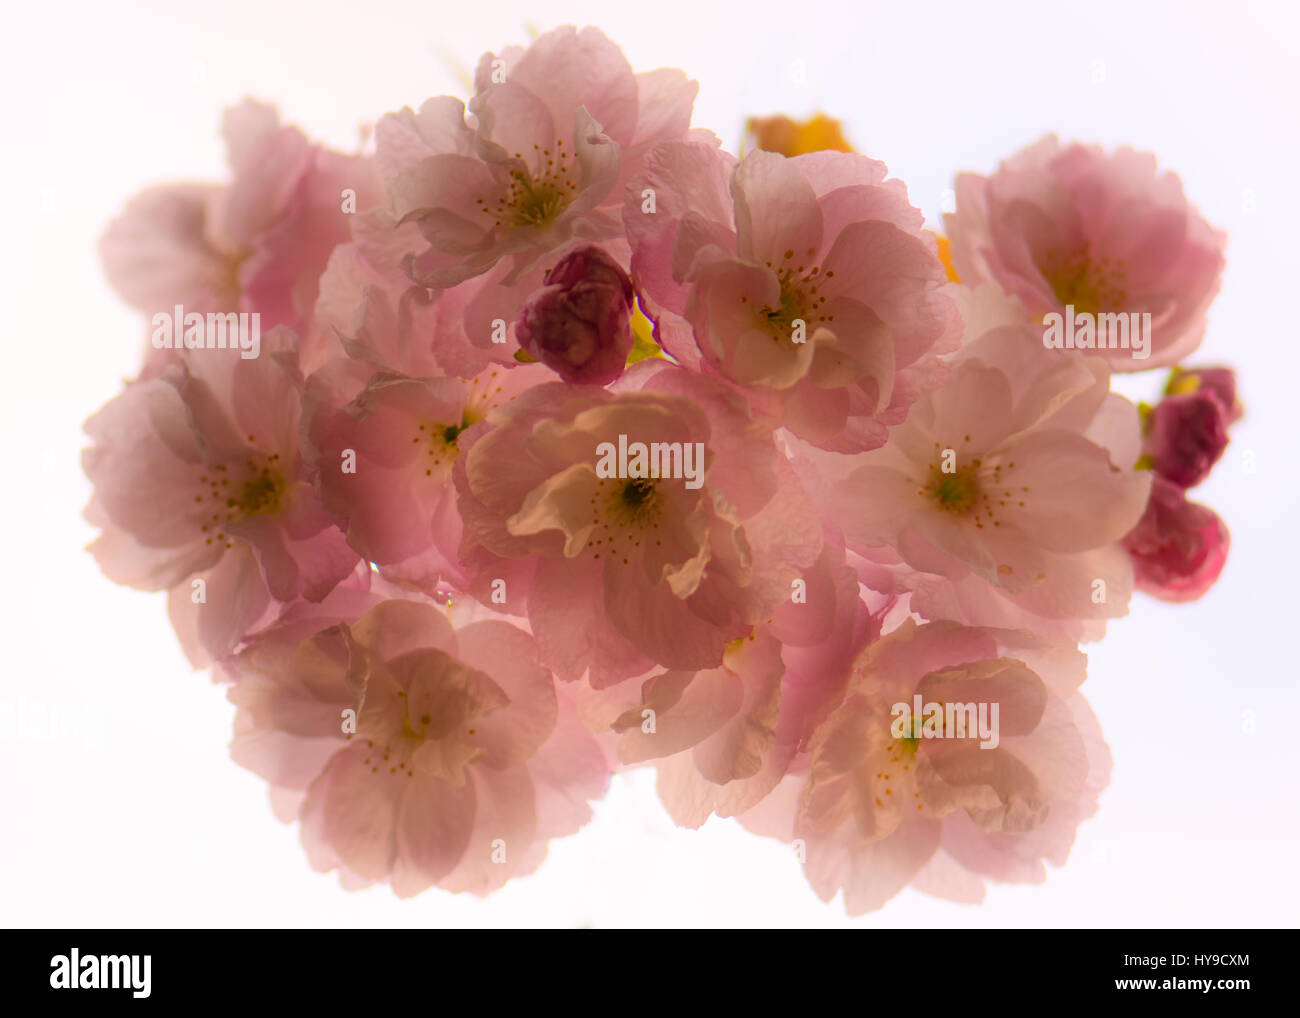 Japanese flowering cherry (Prunus hokusai) fleurs de ci-dessous. Grande semi-doubles fleurs rose pâle de l'arbre de la famille des Rosacées, rétroéclairé par sky Banque D'Images